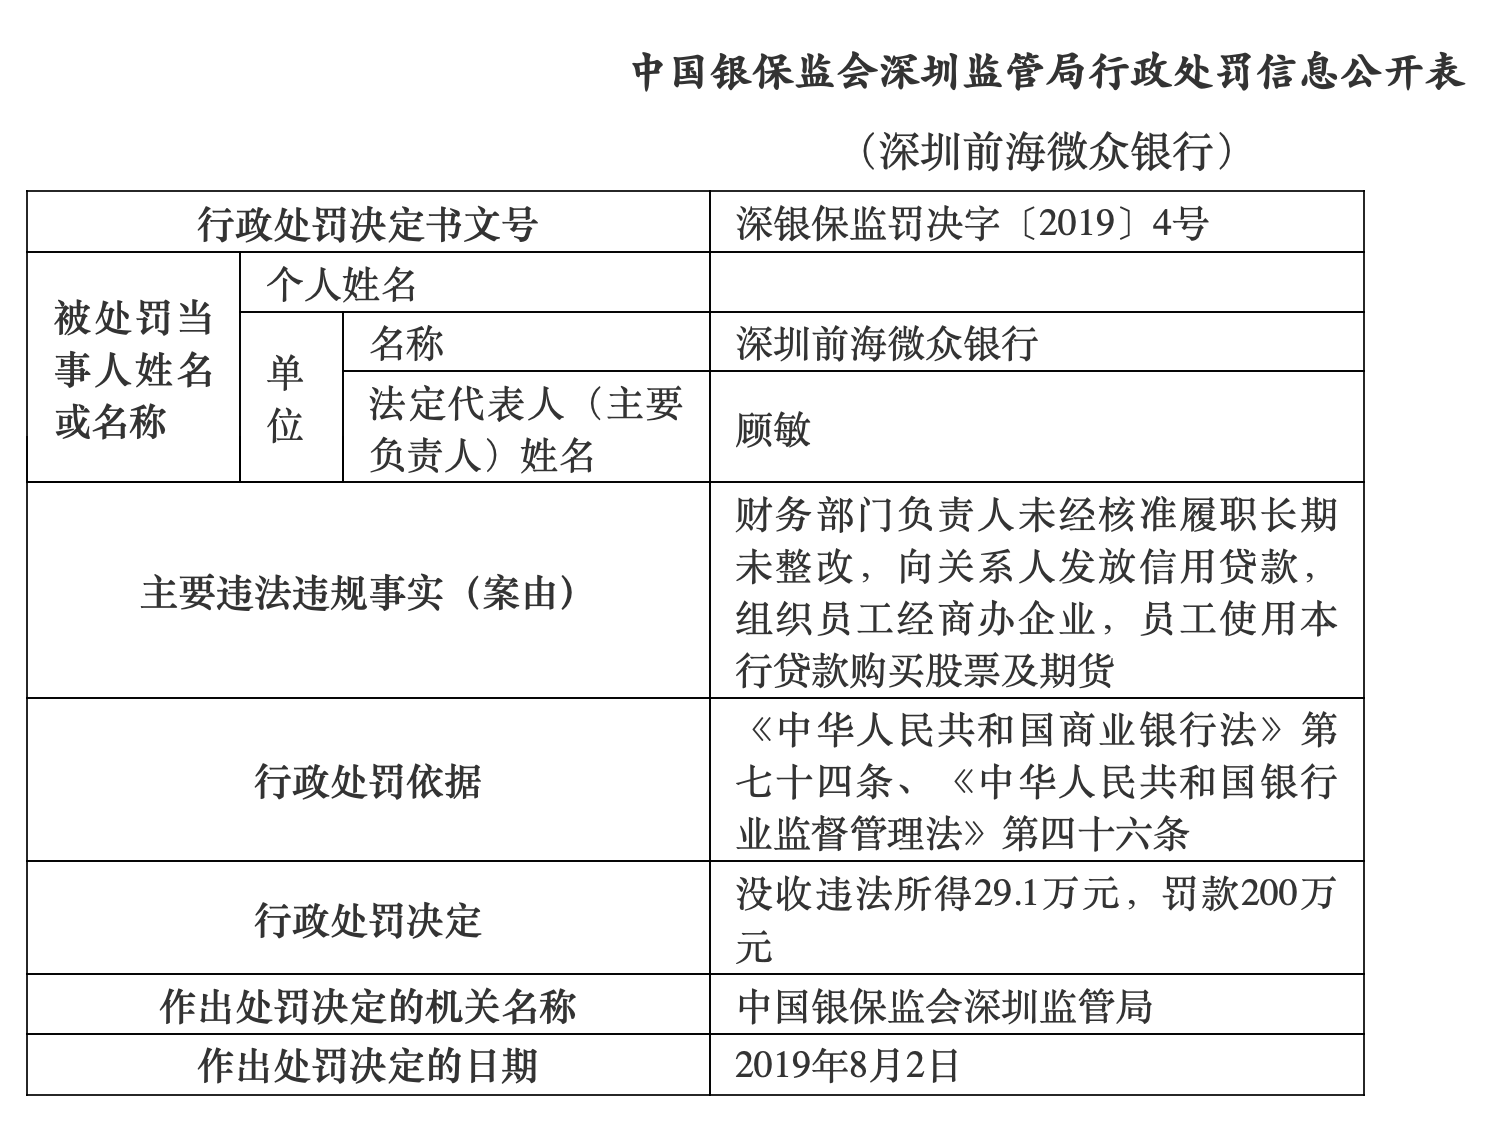 深圳前海微众银行被没收违法所得29.1万元，罚款200万元